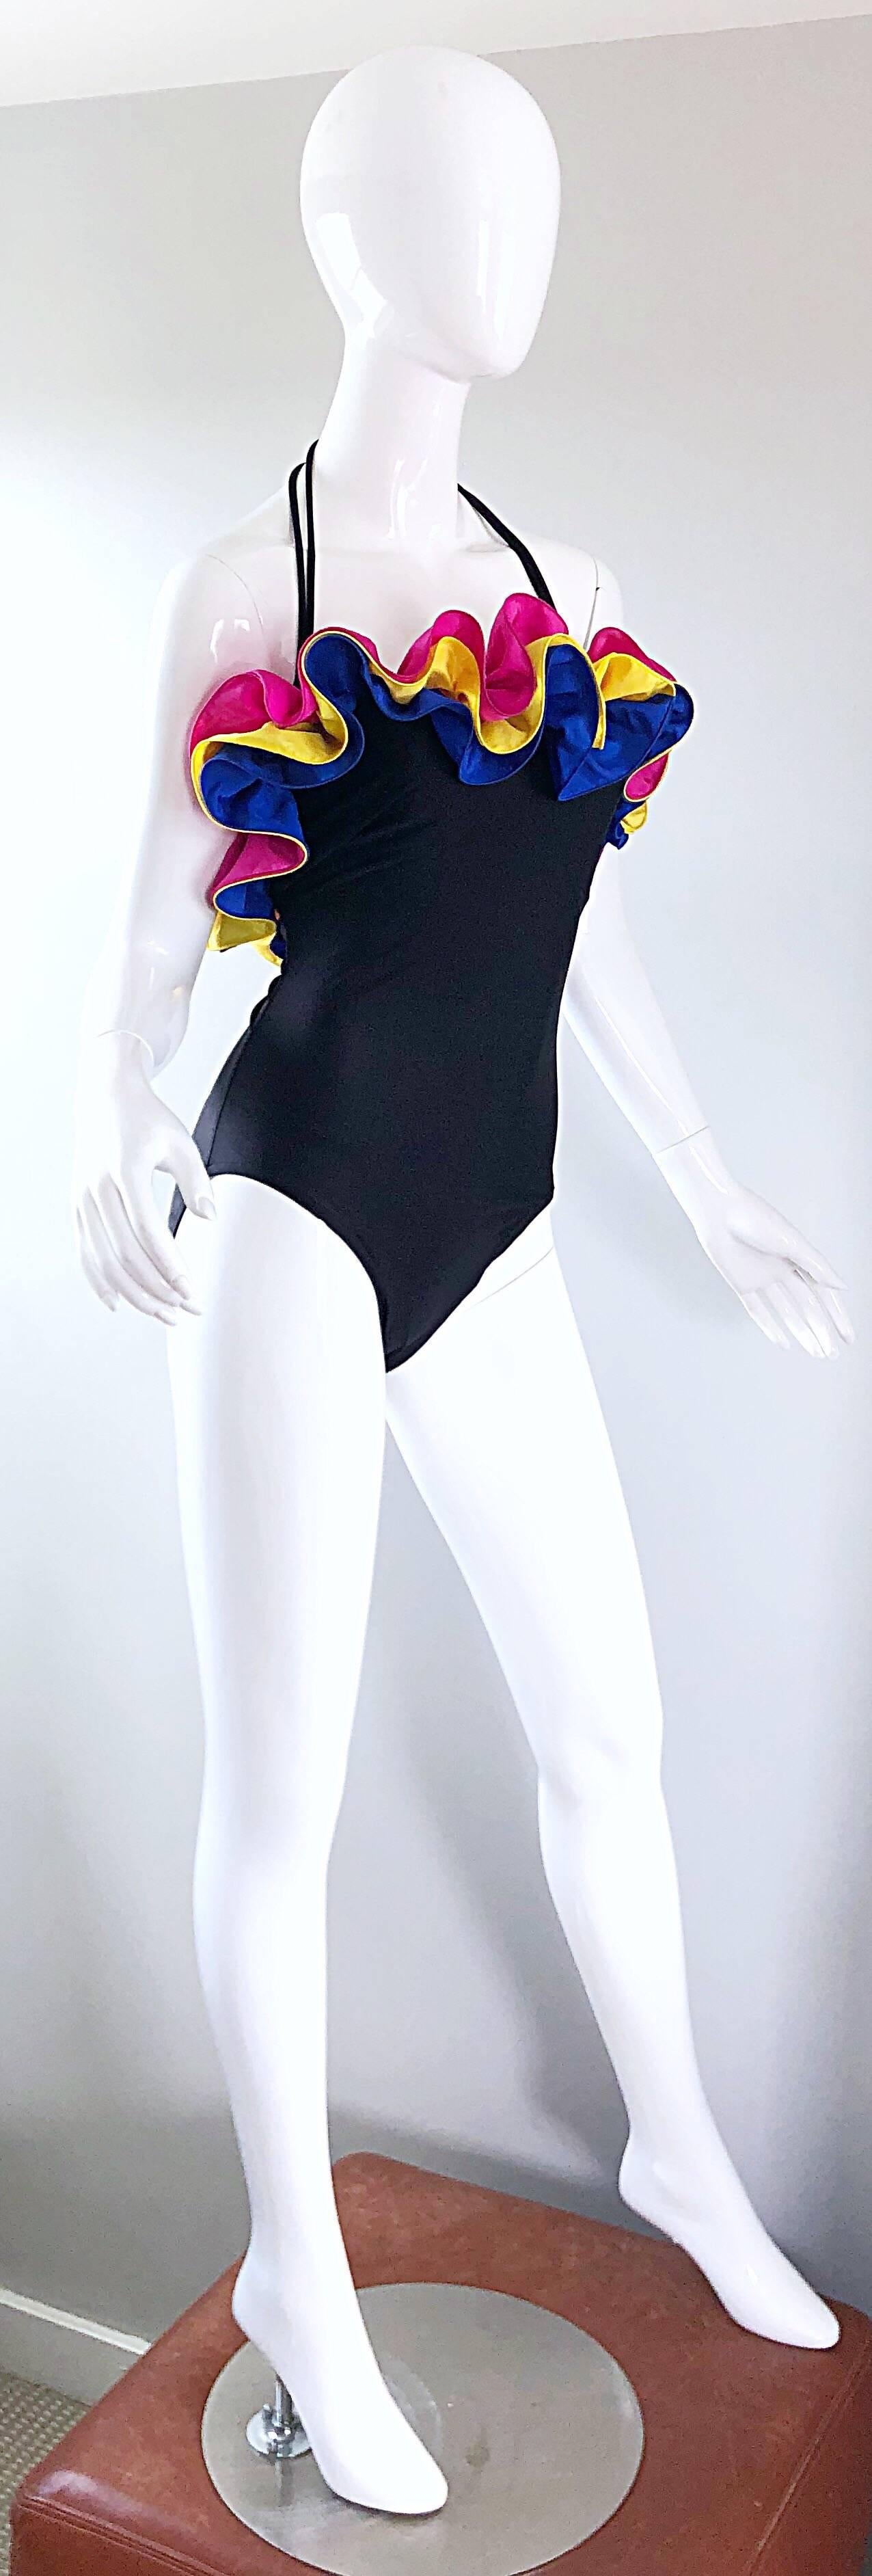 NWT Vintage Bill Blass Amazing Flamenco Style One Piece Swimsuit Bodysuit 1